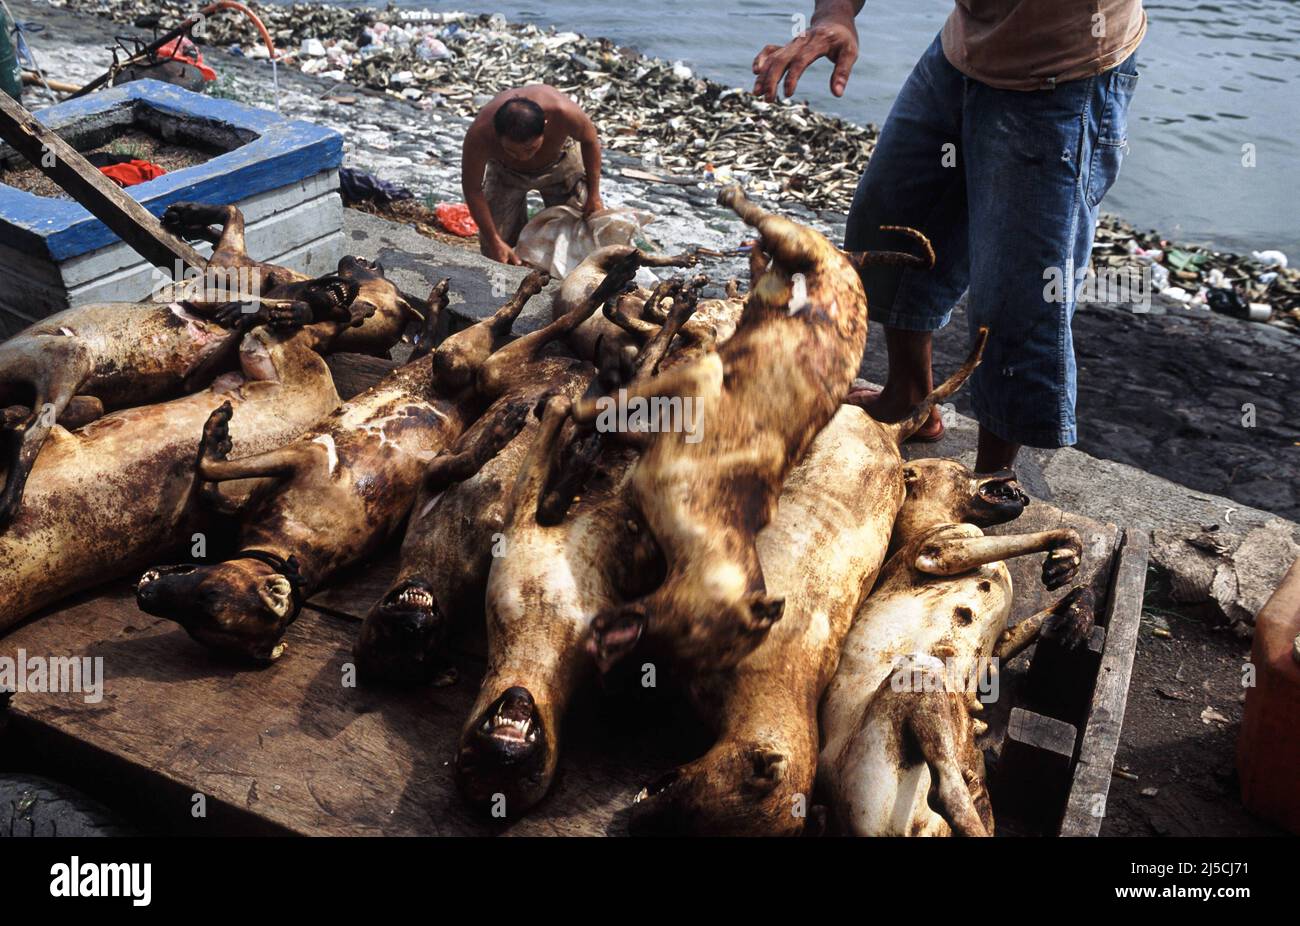 16.04.2009, Manado, Sulawesi, Indonesien, Asien - frisch geschlachtete Hunde werden an einem Steg in der nordindonesischen Hafenstadt zum Weitertransport verladen. Knochen und Kieferknochen von toten Hunden liegen im Hintergrund. [Automatisierte Übersetzung] Stockfoto